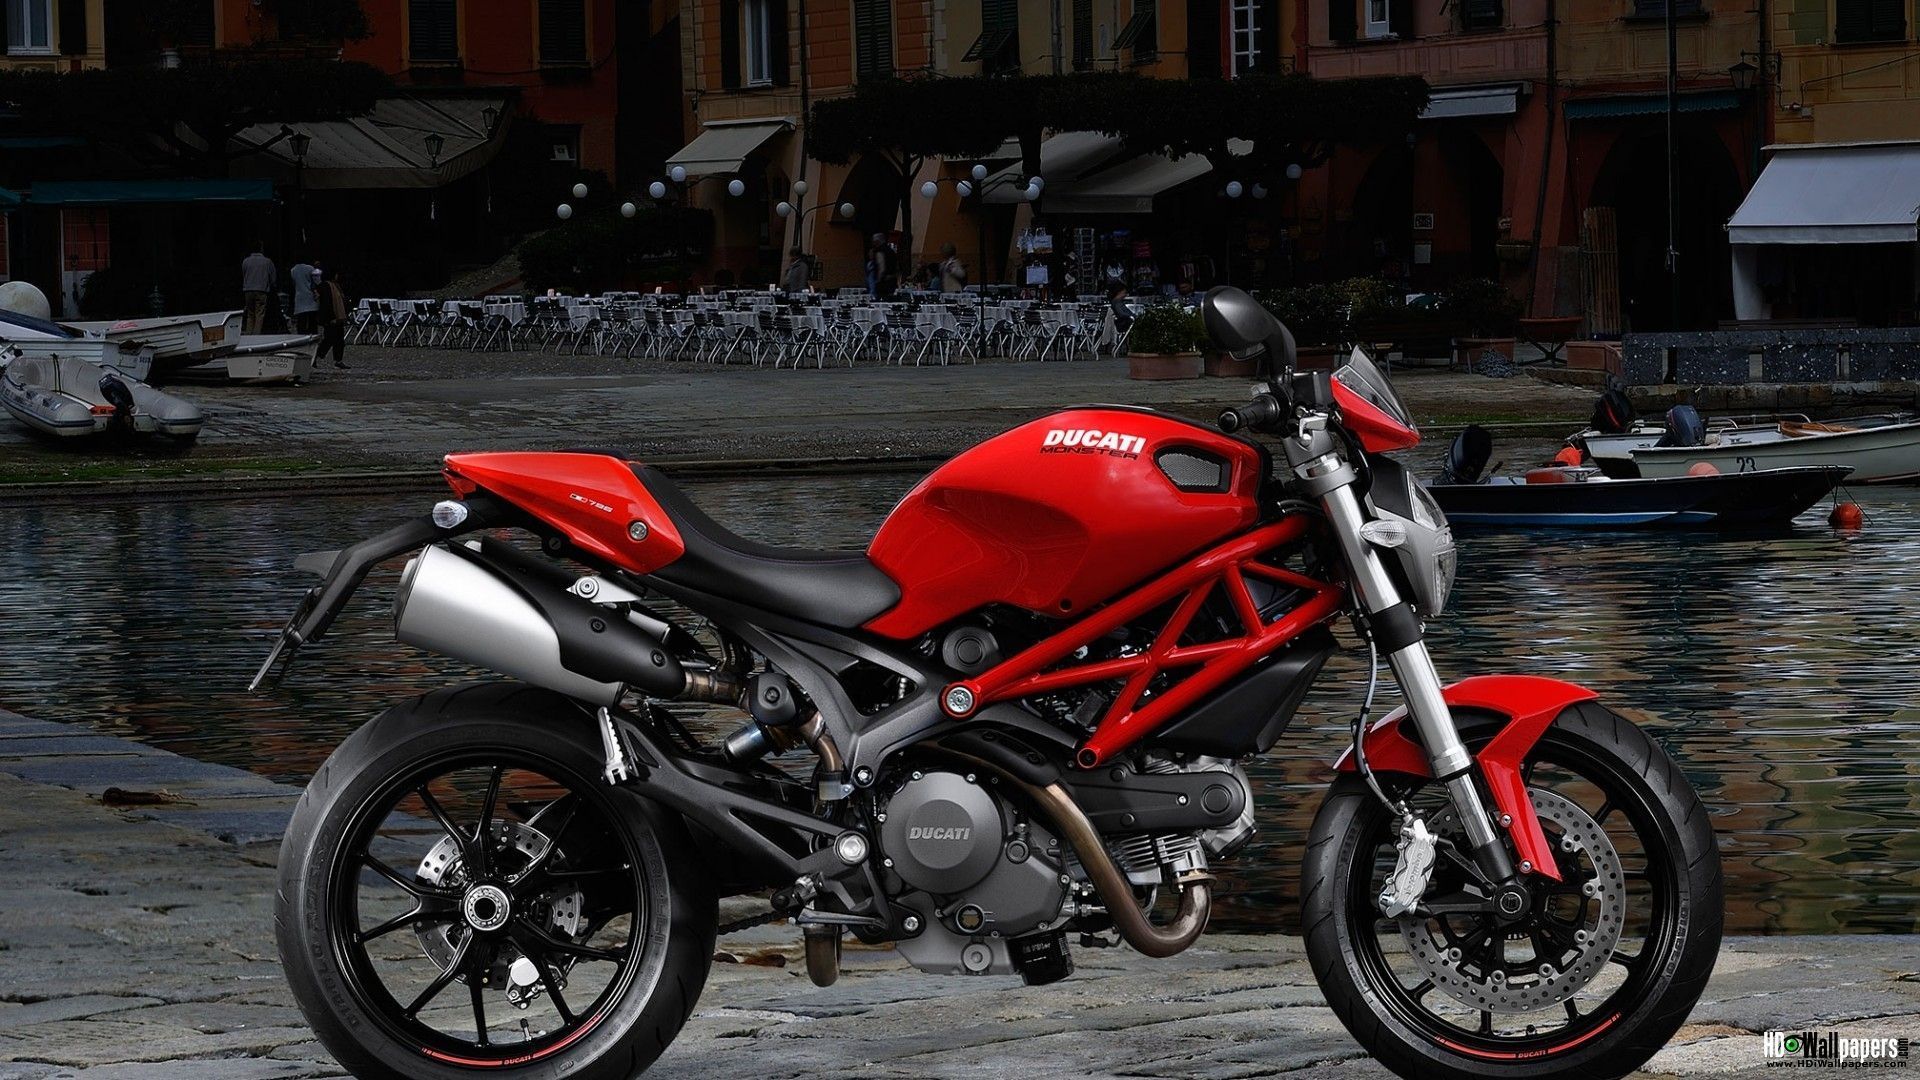 2015-Ducati-Monster-821-Wallpapers-Full-HD-Download-Free-01.jpg